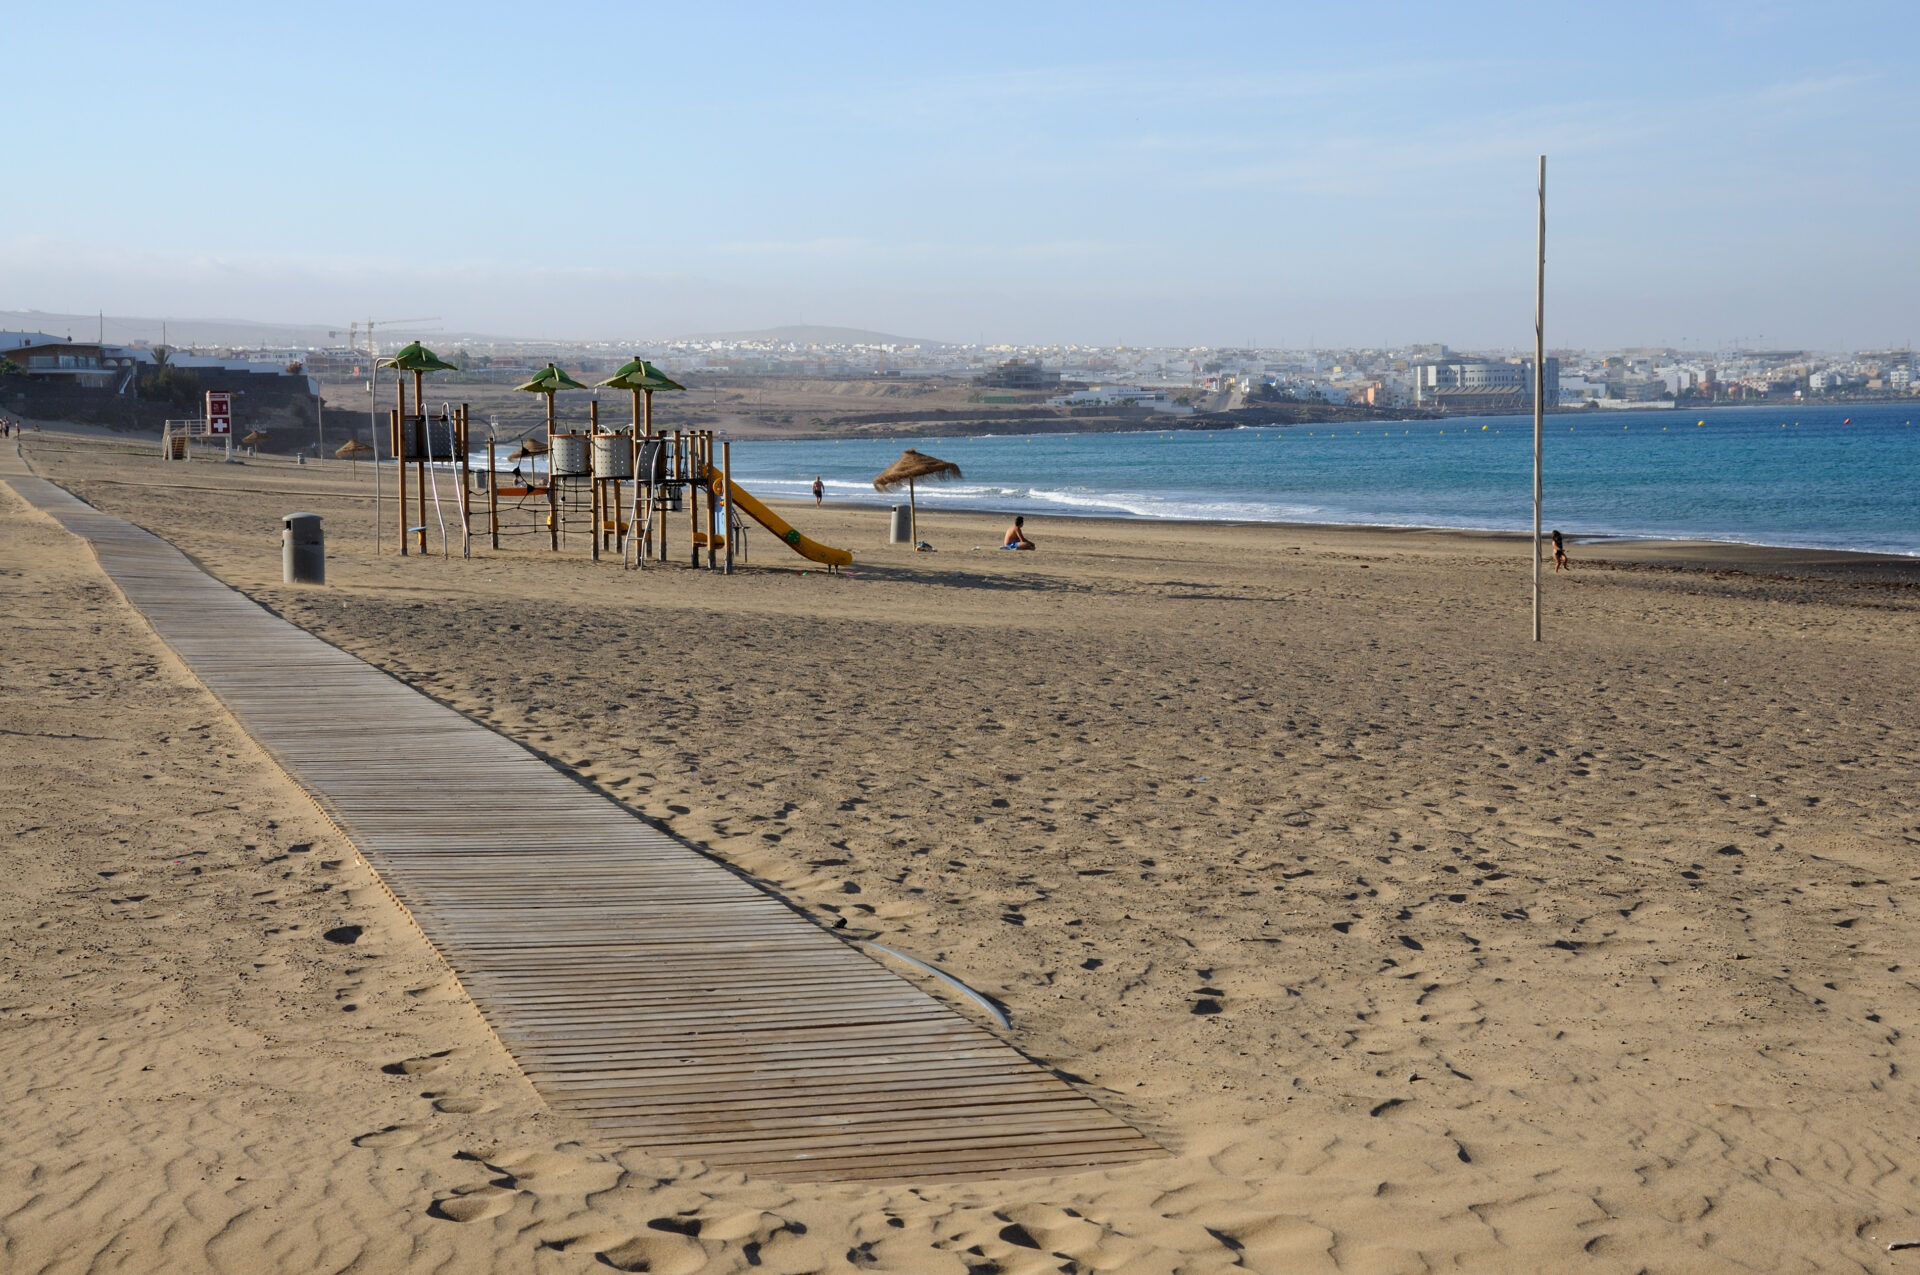 Playa blanca near Puerto del Rosario, Fuerteventura, Spain